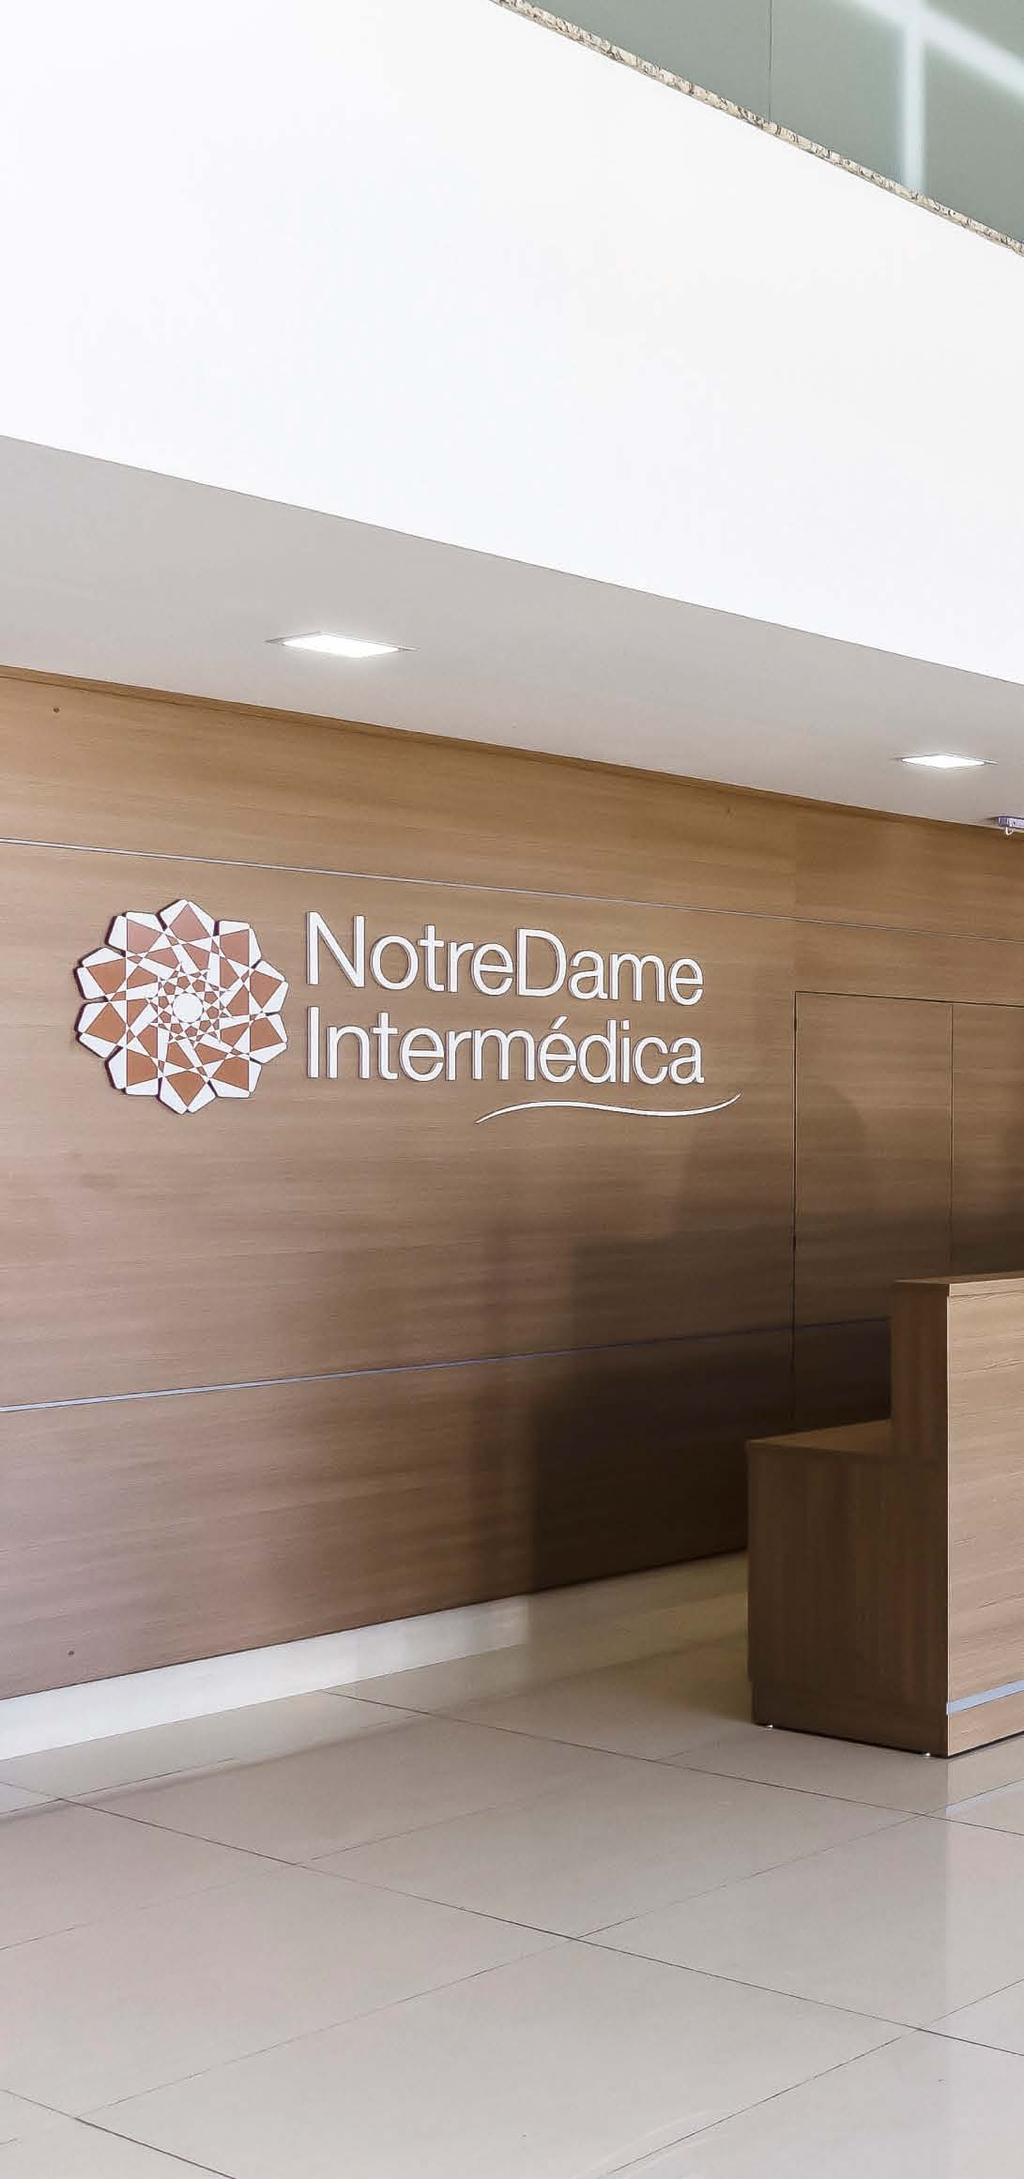 rede própria A NotreDame Intermédica possui unidades autônomas que respeitam as características regionais e garantem um serviço personalizado, humanizado e de qualidade aos seus beneficiários.